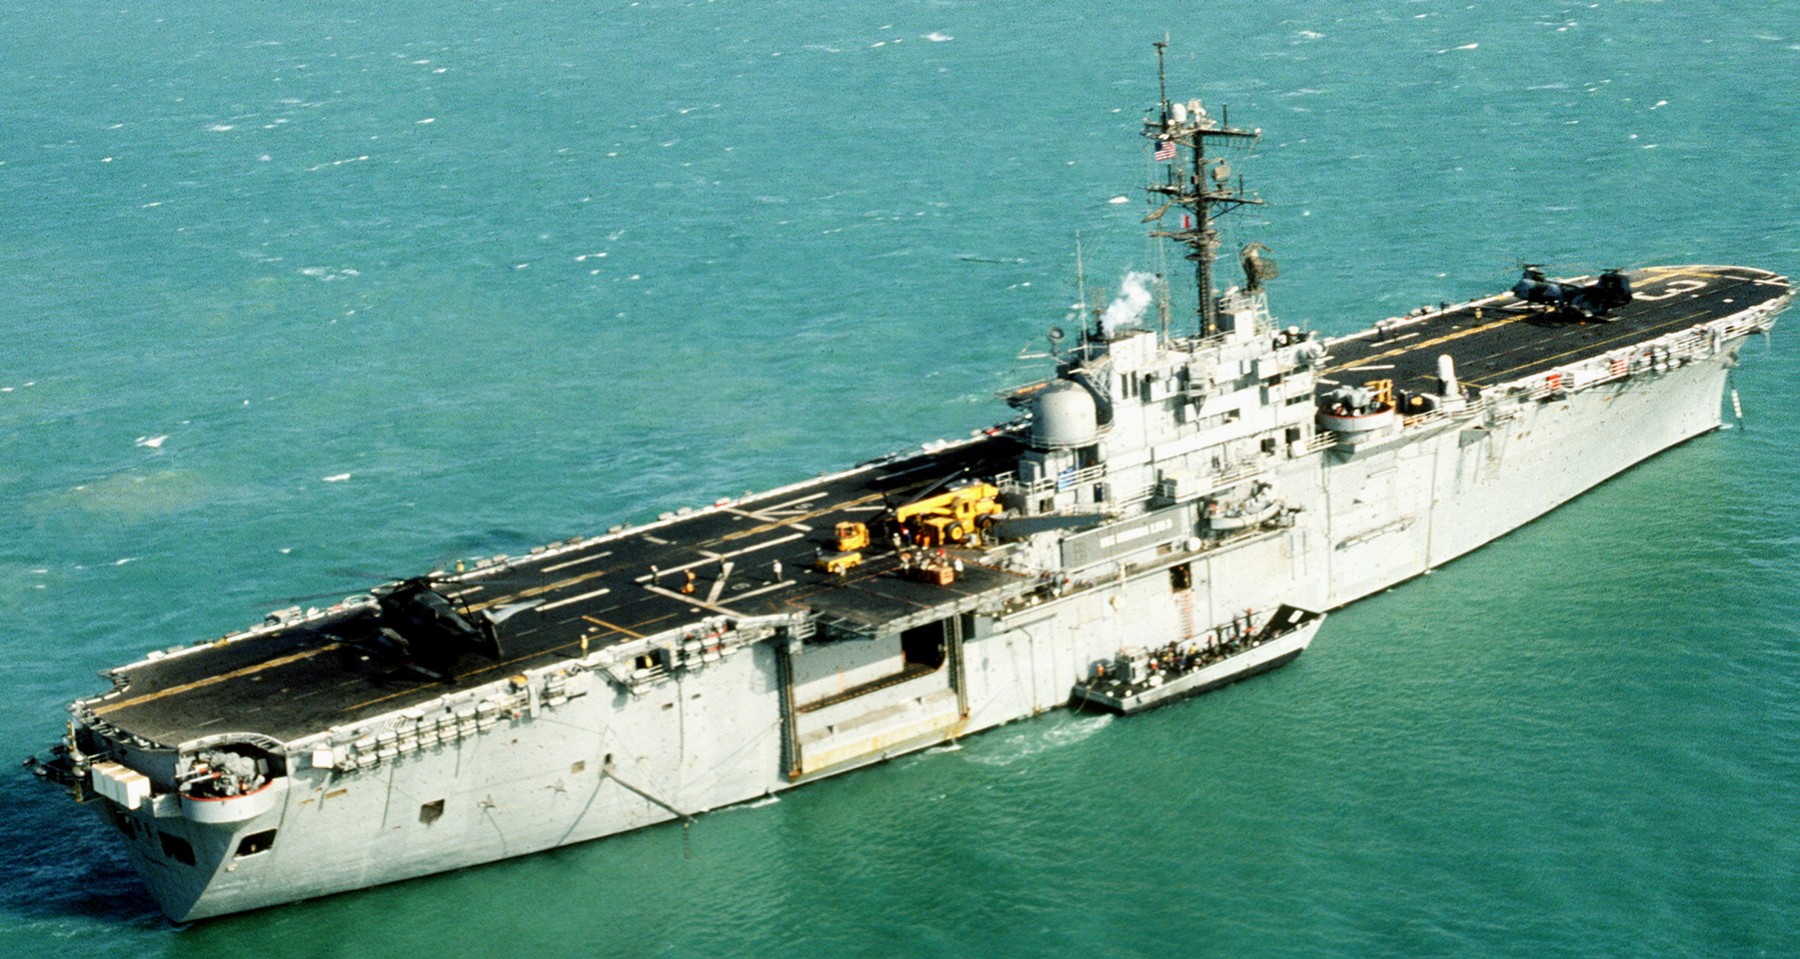 lph-3 uss okinawa iwo jima class amphibious assault ship landing platform helicopter us navy 19 persian gulf 1992